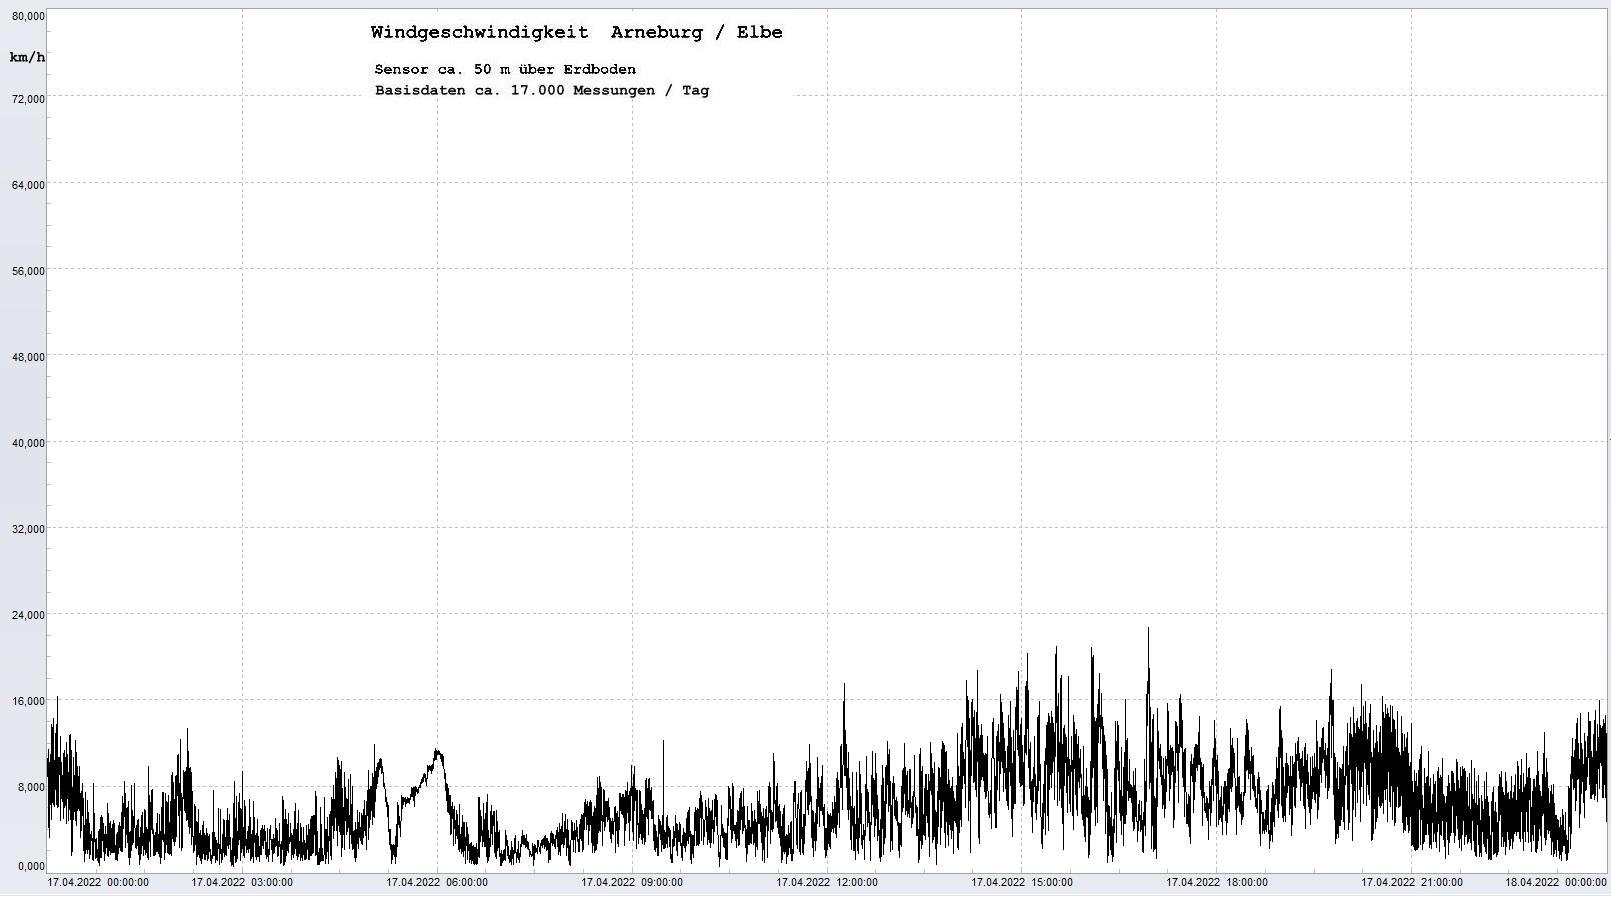 Arneburg Tages-Diagramm Winddaten, 17.04.2023
  Diagramm, Sensor auf Gebäude, ca. 50 m über Erdboden, Basis: 5s-Aufzeichnung